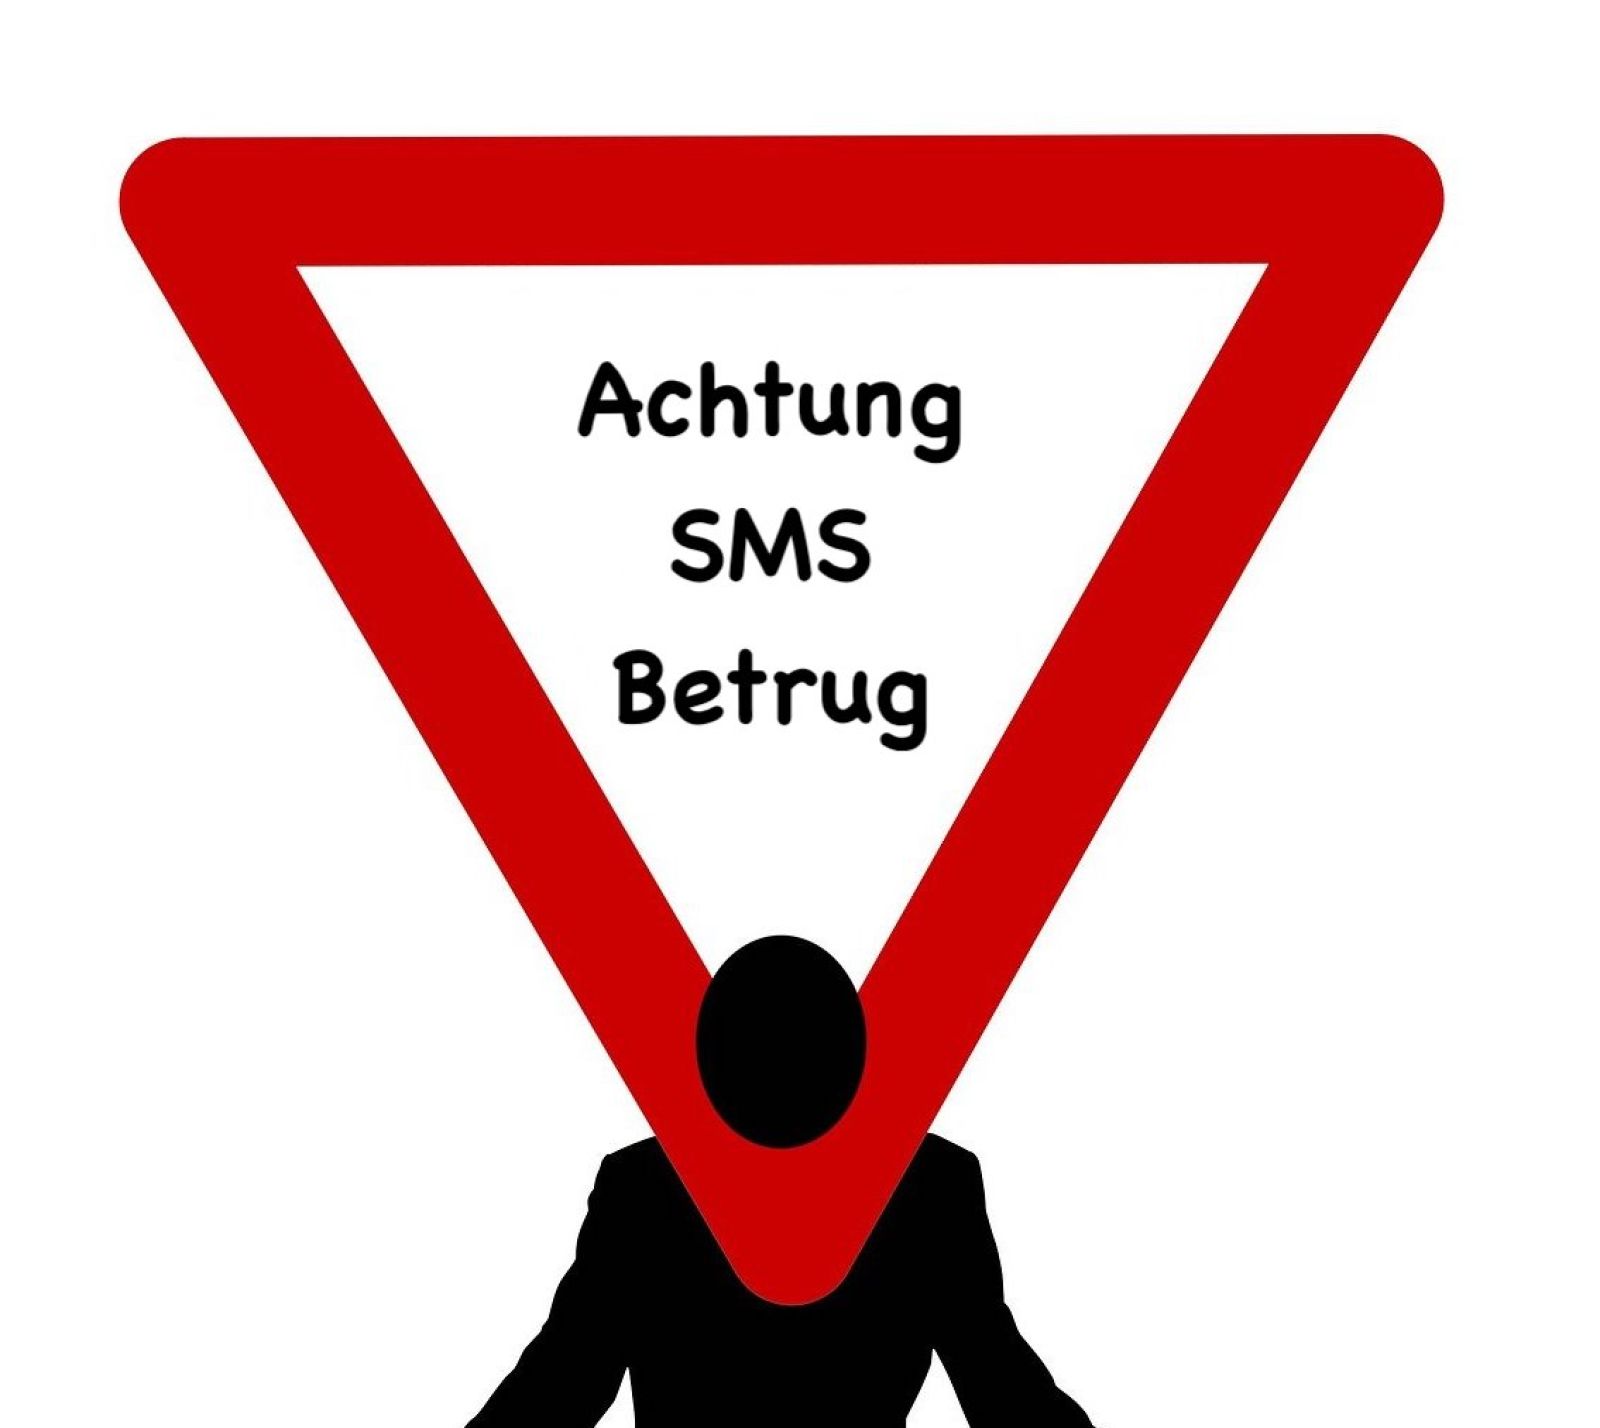 Frankfurt: Schock-SMS -Betrüger schlagen zu - Polizei warnt